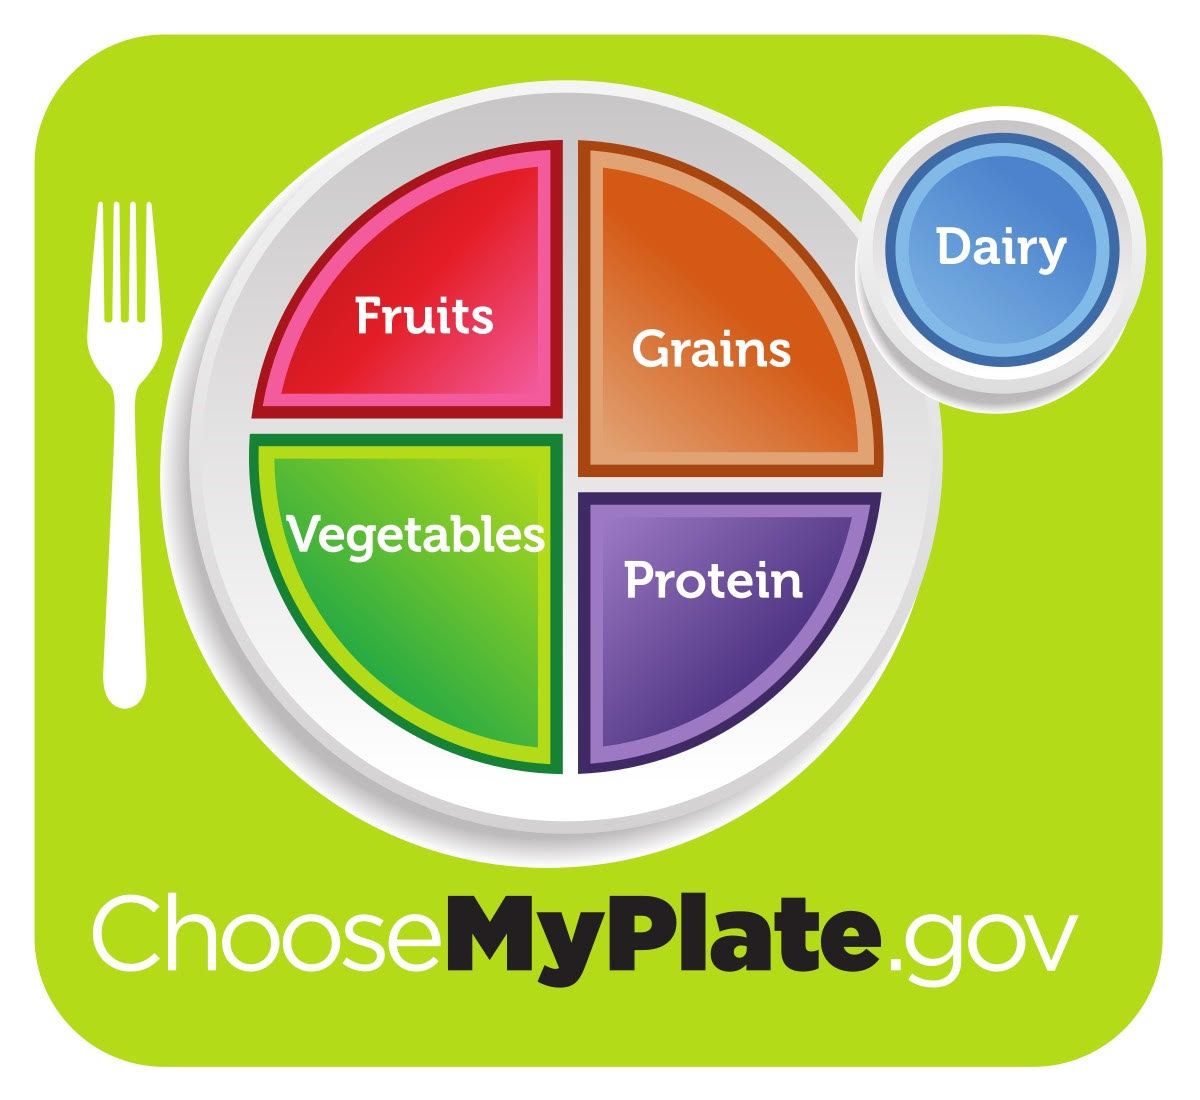 Grafika "MyPlate.gov" koja predstavlja savršeno izbalansiran unos hrane